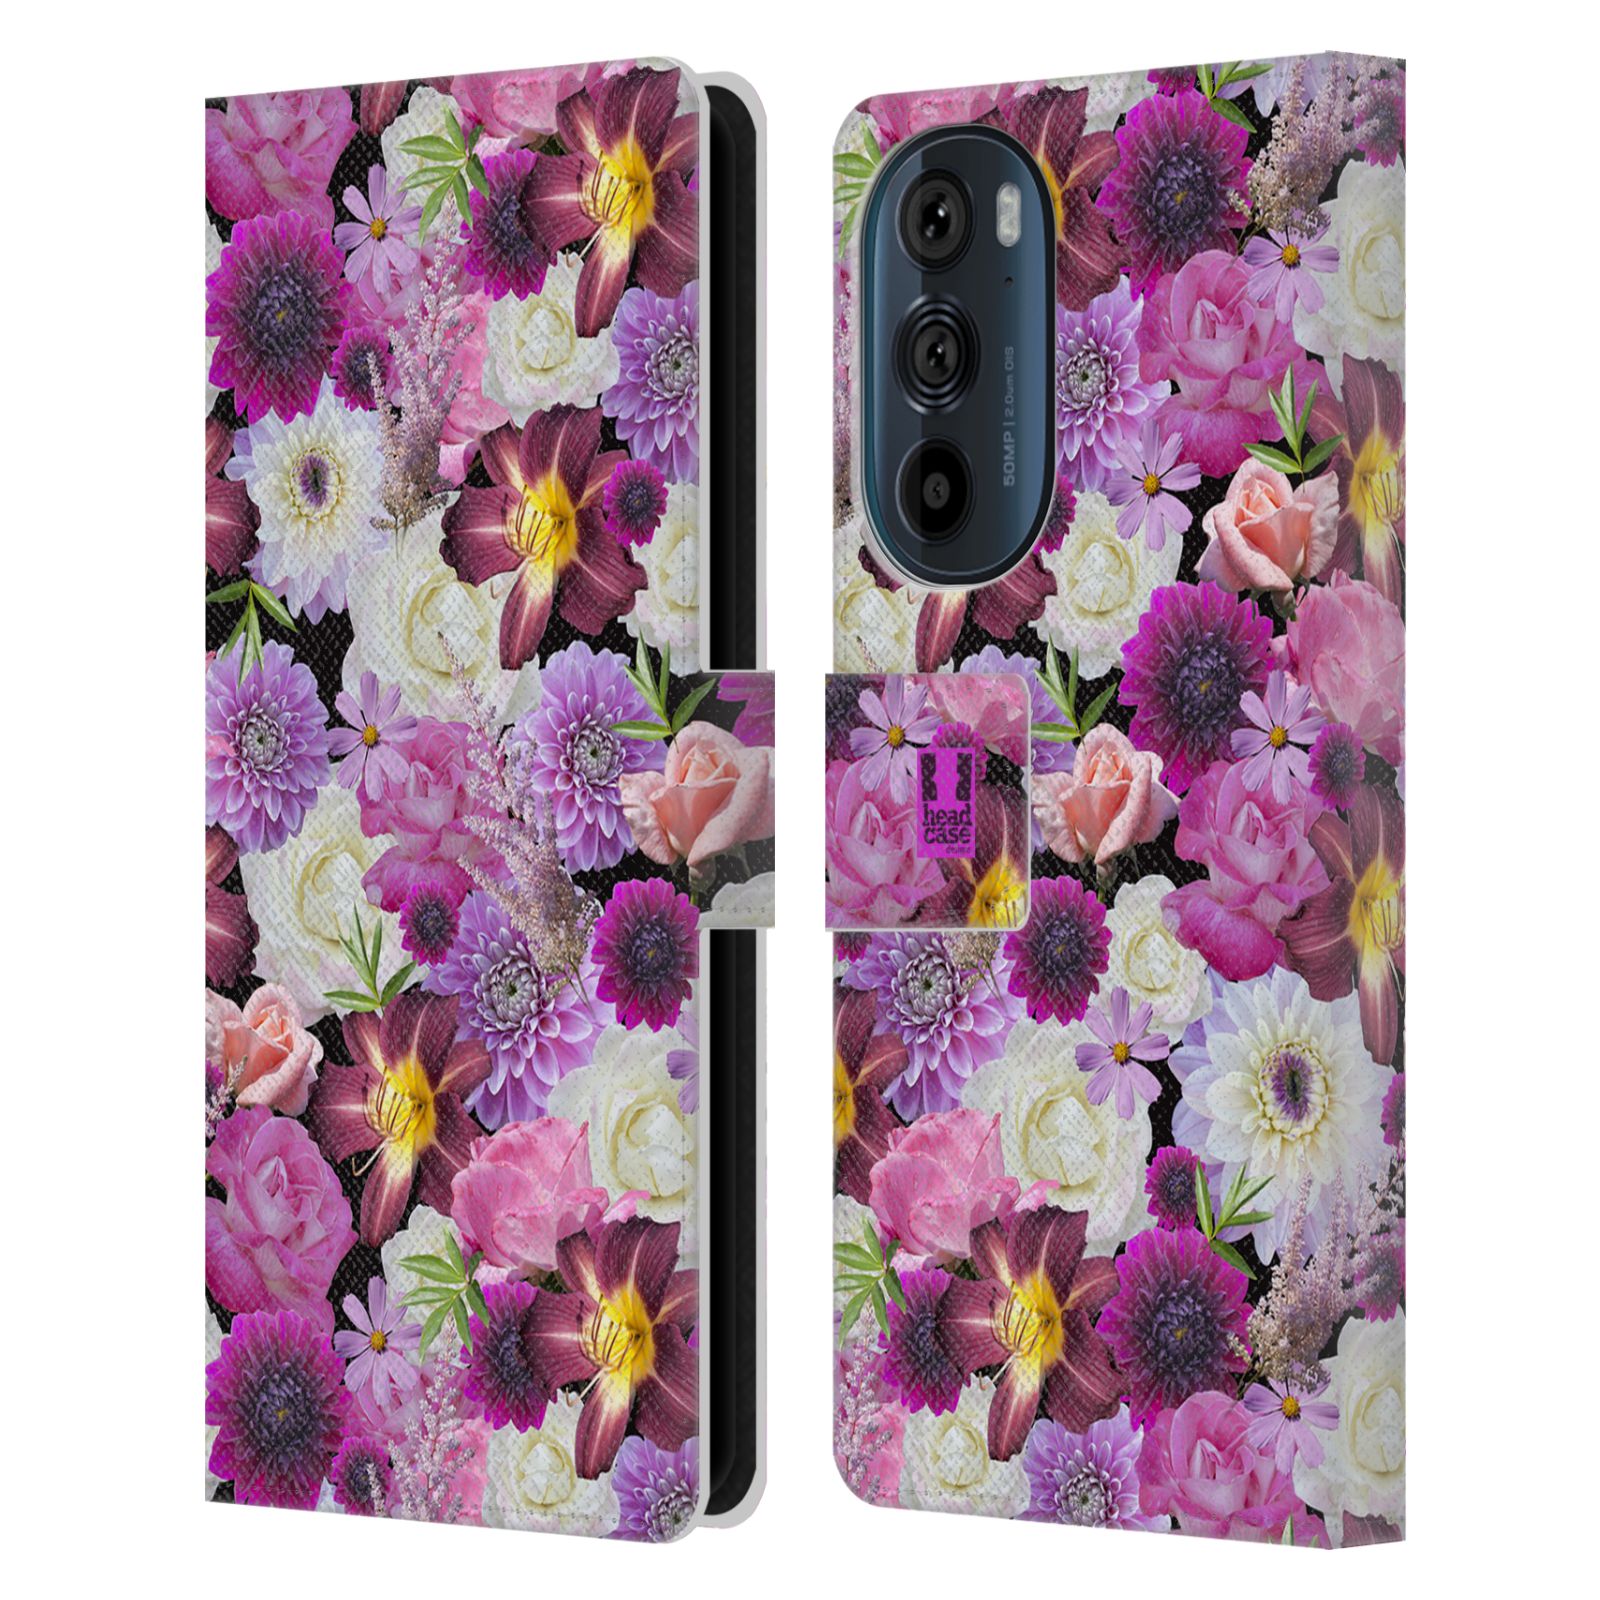 Pouzdro HEAD CASE na mobil Motorola EDGE 30 květy foto fialová a bílá